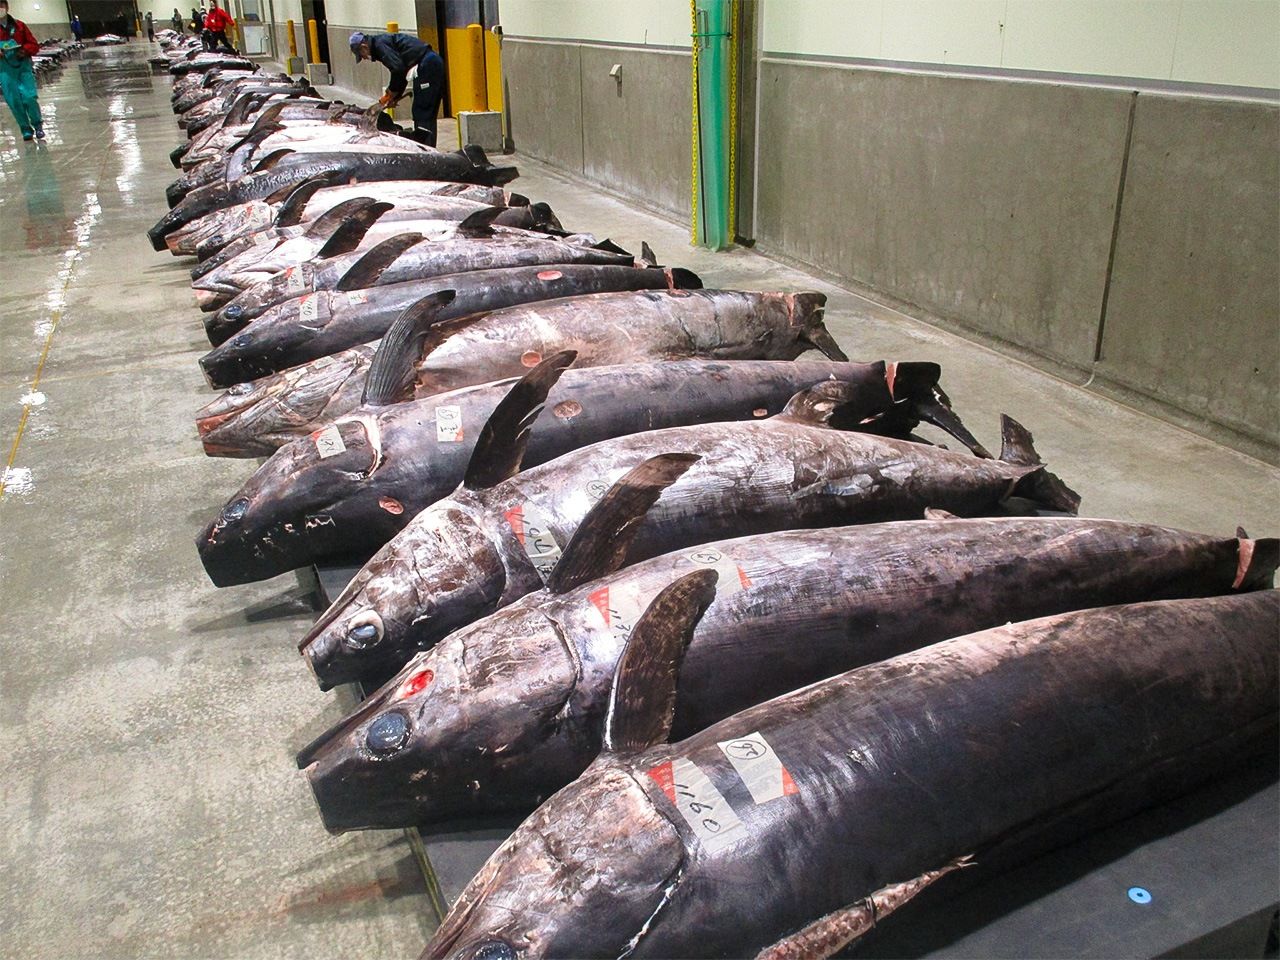 أسماك أبو سيف في سوق لبيع الأسماك في كيسينّوما. تفتخر كيسينّوما بعرضها التجاري -أكثر من أي ميناء آخر في اليابان- لأسماك أبو سيف، يزن بعضها أكثر من 300 كيلوغرام.